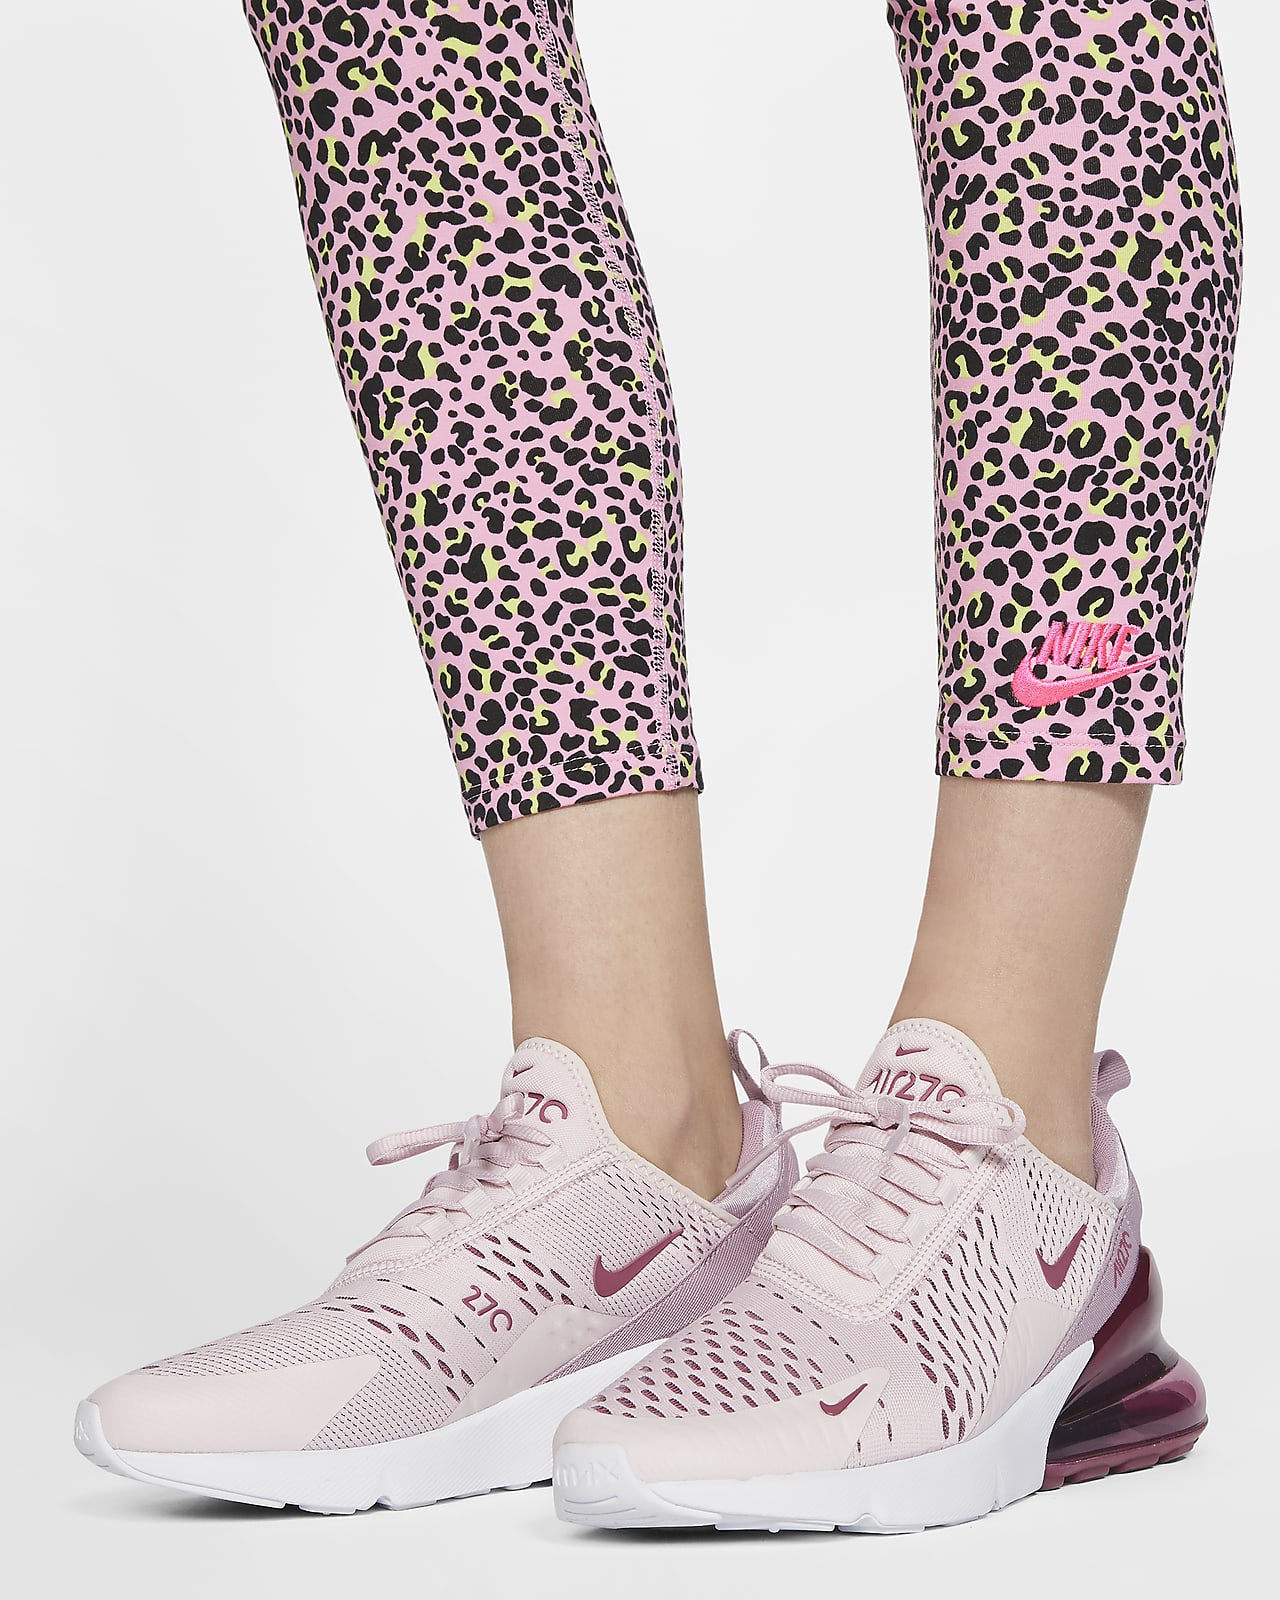 Animal Print Leggings. Nike CA